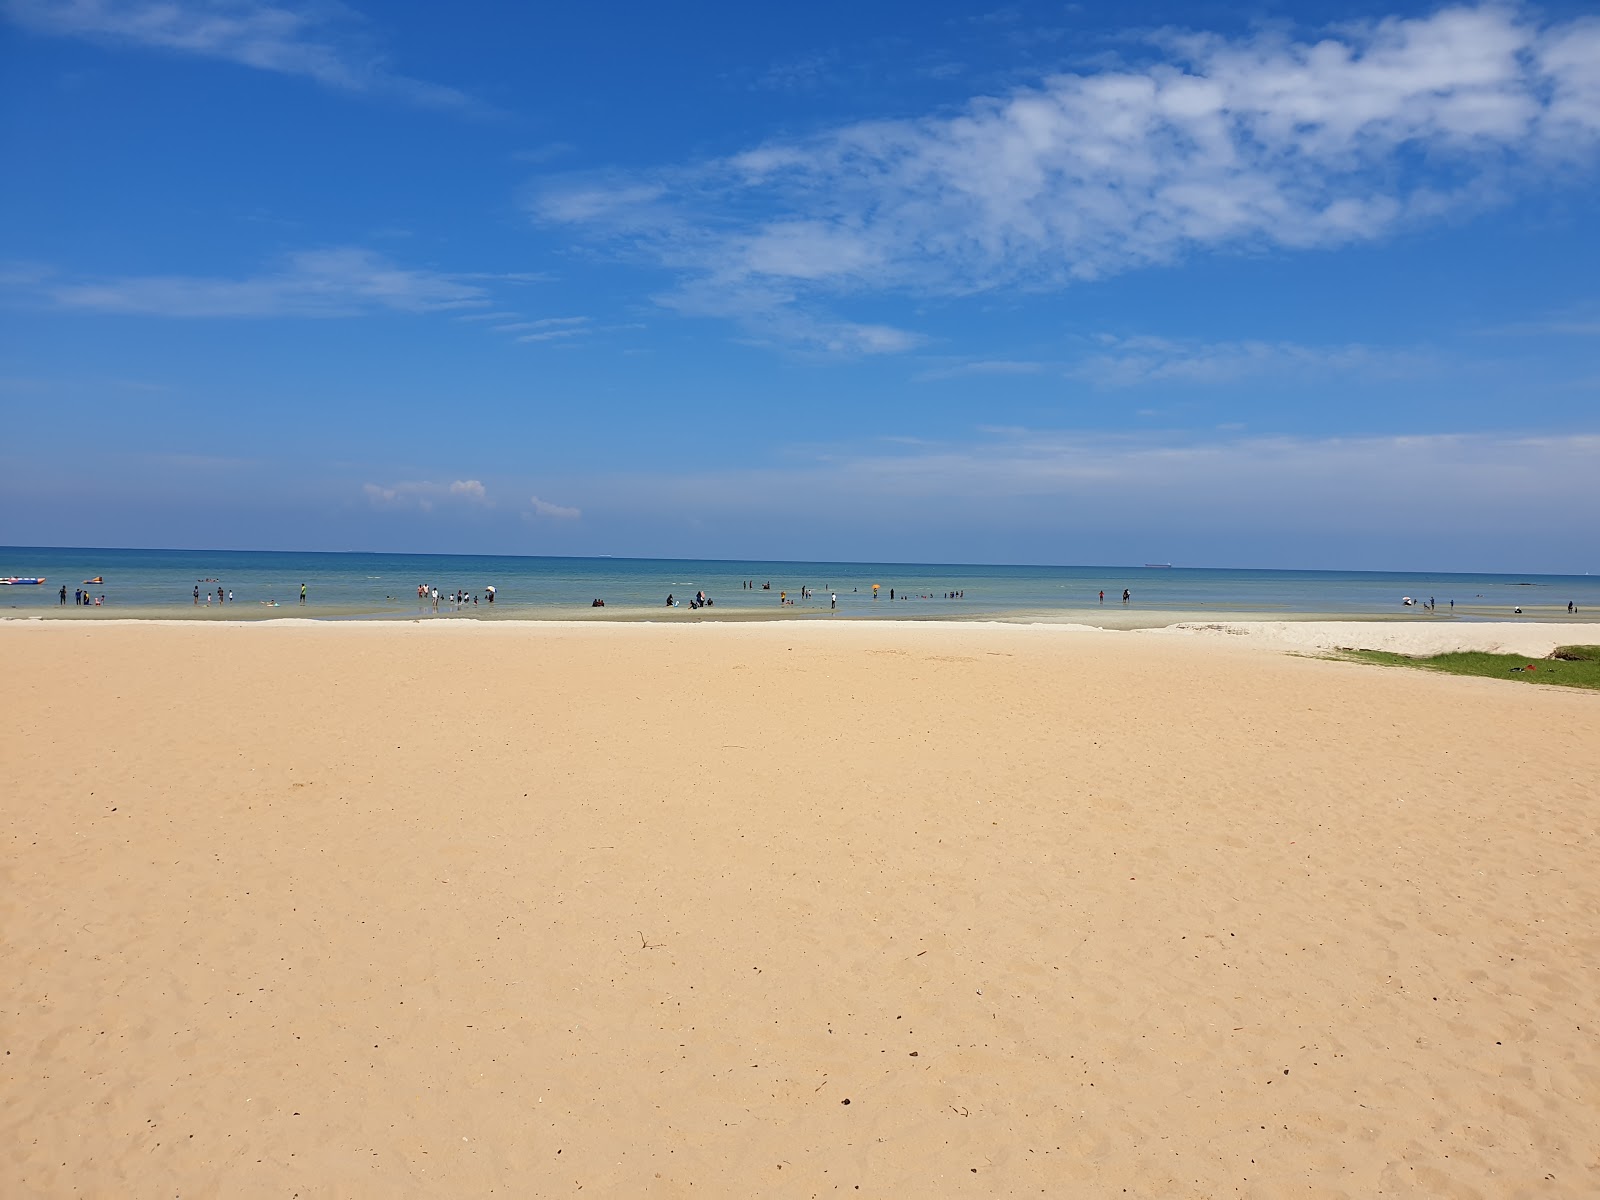 Zdjęcie Saujana Beach - popularne miejsce wśród znawców relaksu